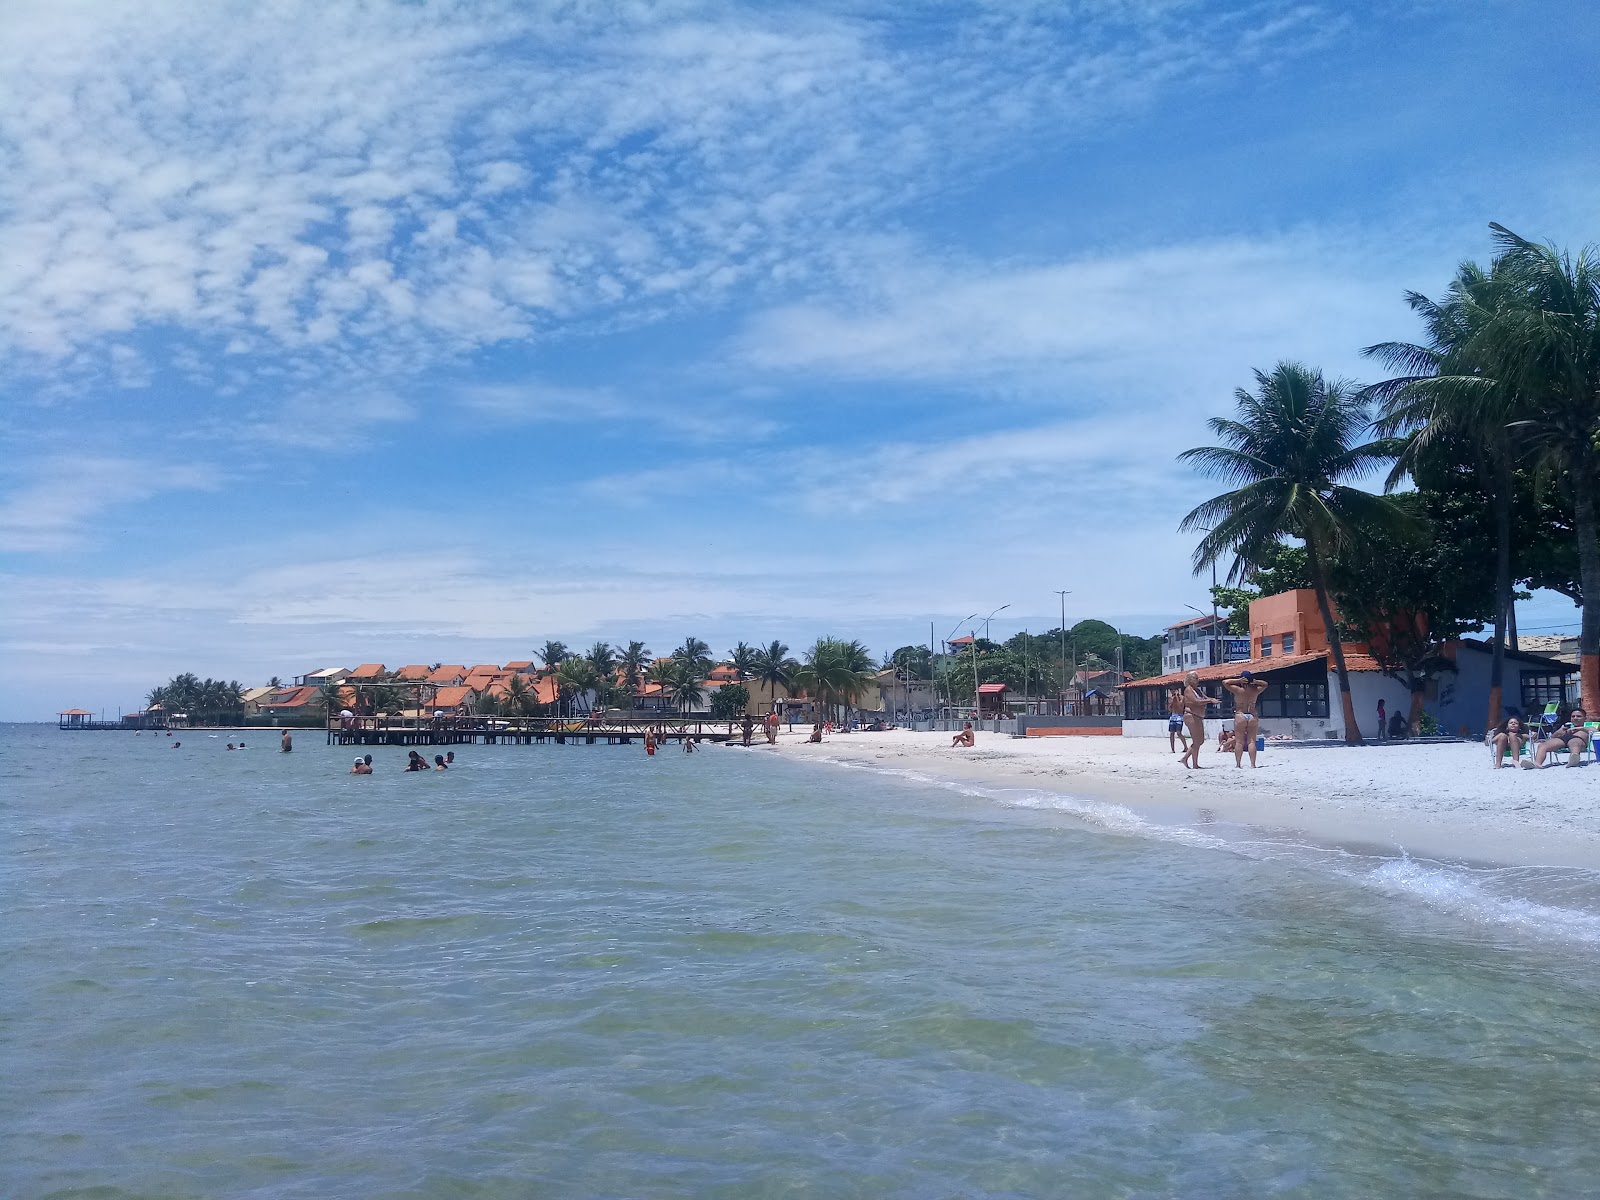 Praia do Popeye'in fotoğrafı geniş plaj ile birlikte